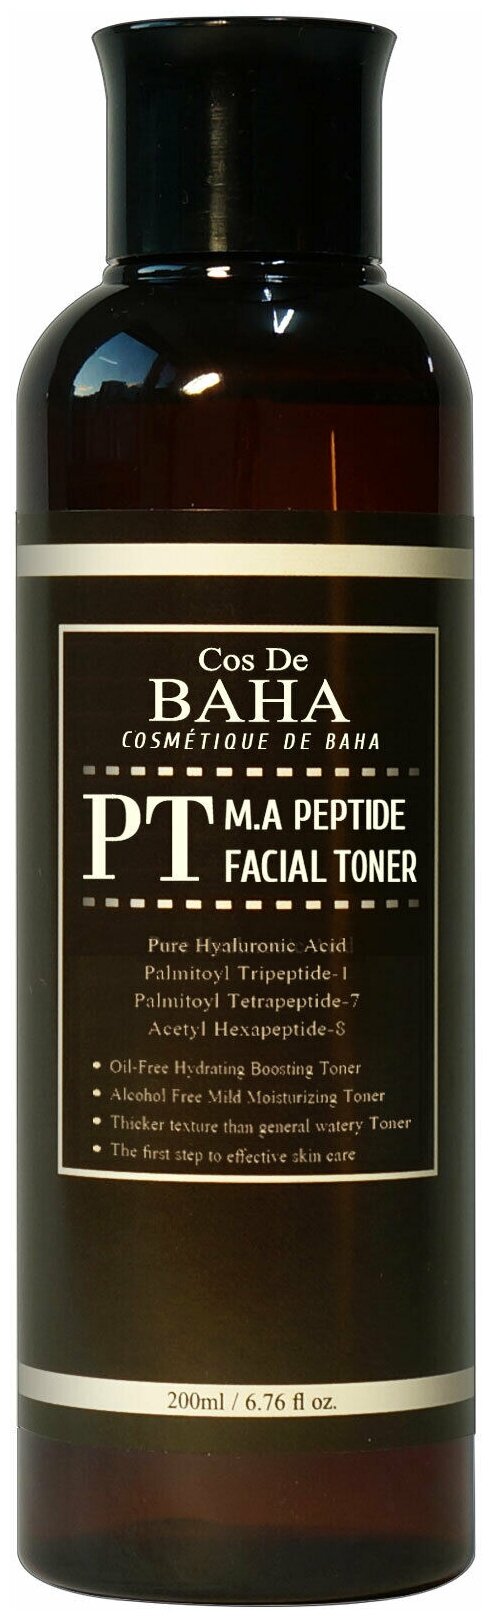 COS DE BAHA Тонер PT M.A Peptide Facial, 200 мл